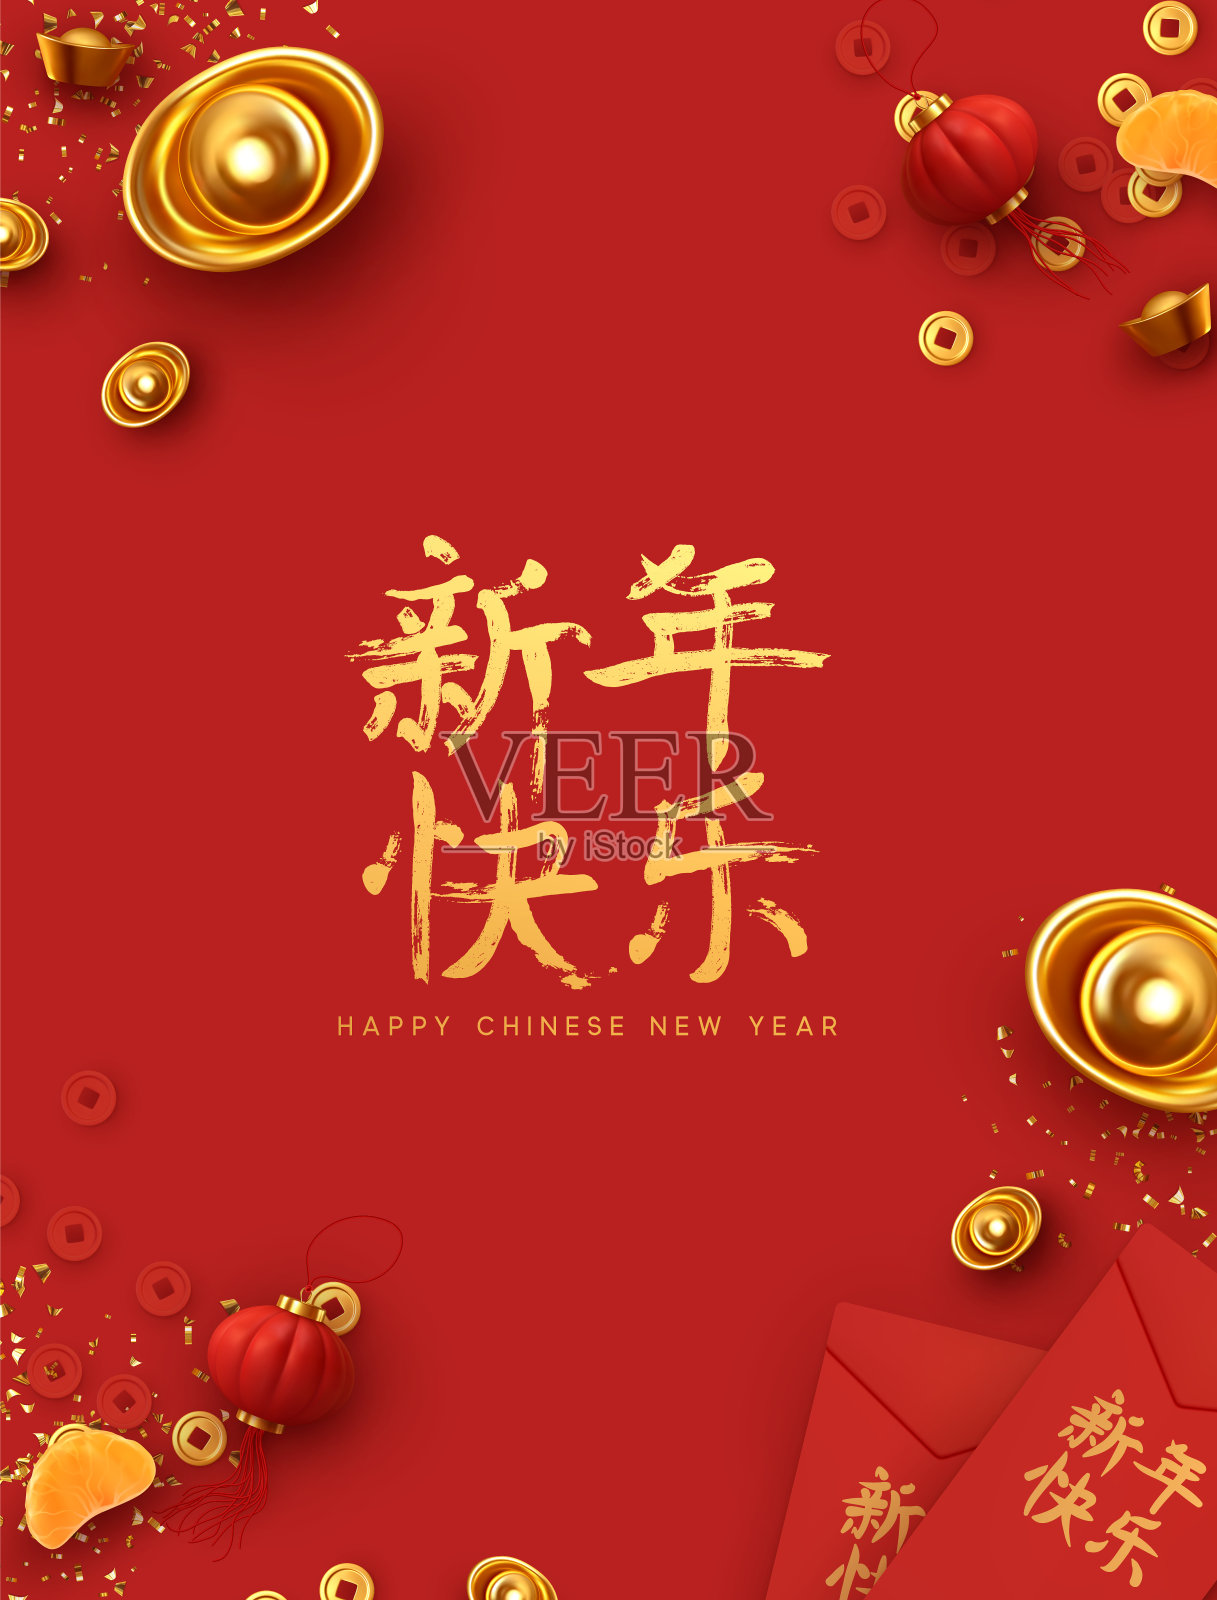 中国新年。传统节日农历新年，春节设计。带有真实元素的红色背景。中国的节日食品，寓意吉祥。家庭时间。平面俯视图设计模板素材